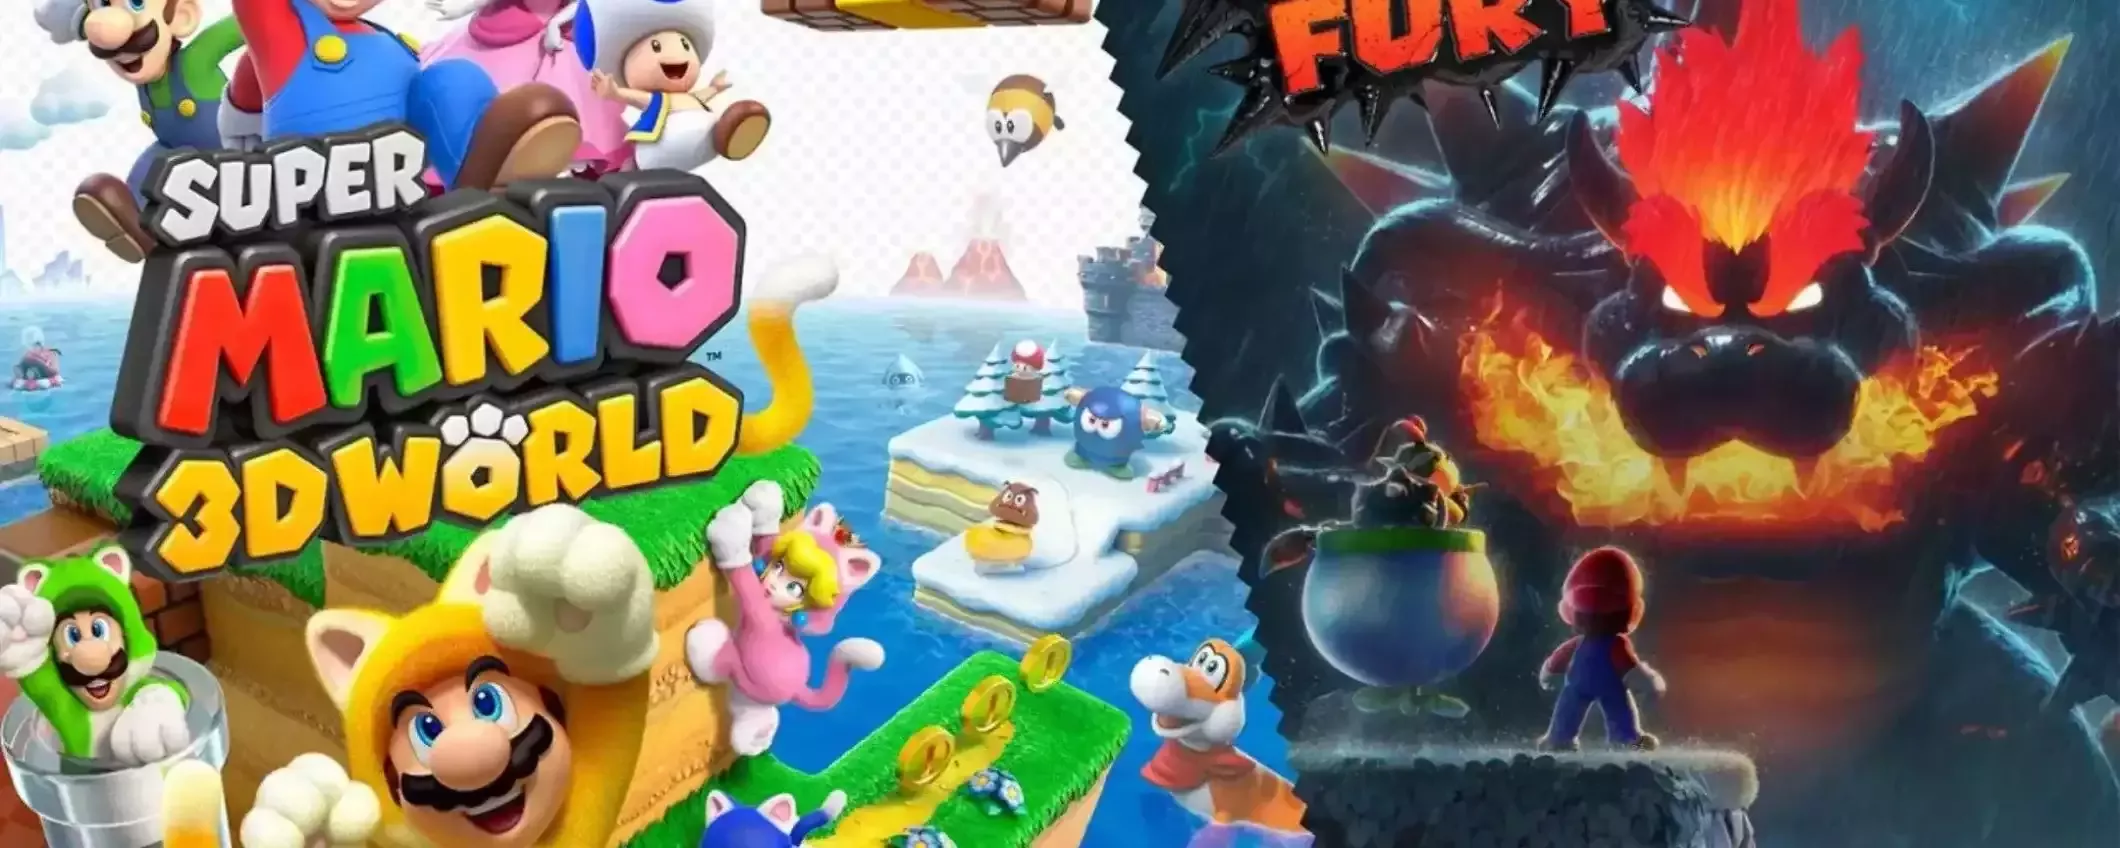 Super Mario 3D World + Bowser's Fury a meno di 47€ su Amazon: corri a prenderlo